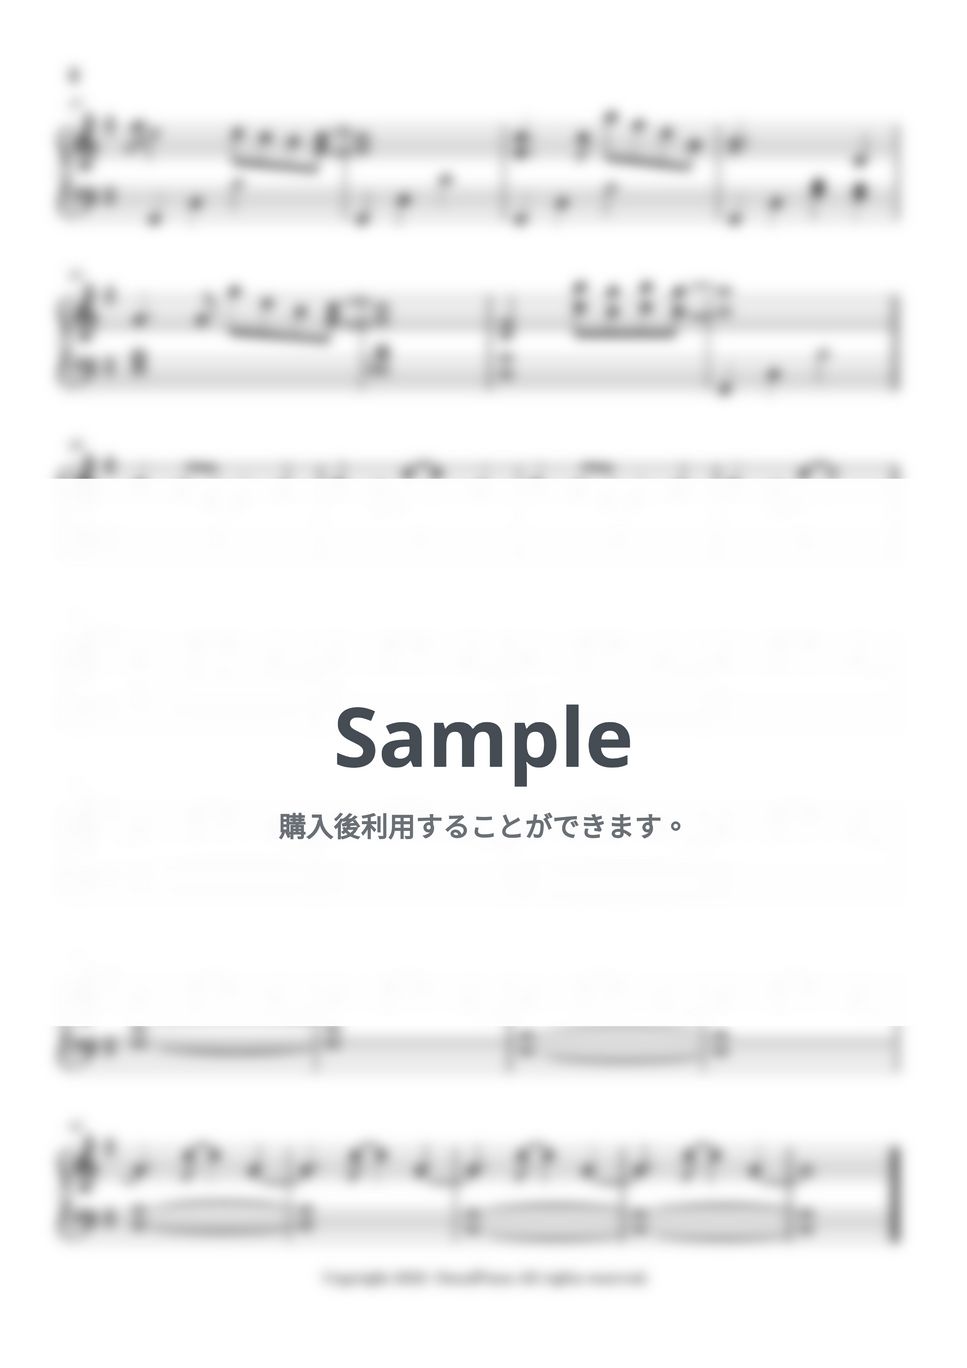 久石譲 - Ask me why (母の思い) (君たちはどう生きるか OST track 12) by 今日ピアノ(Oneul Piano)